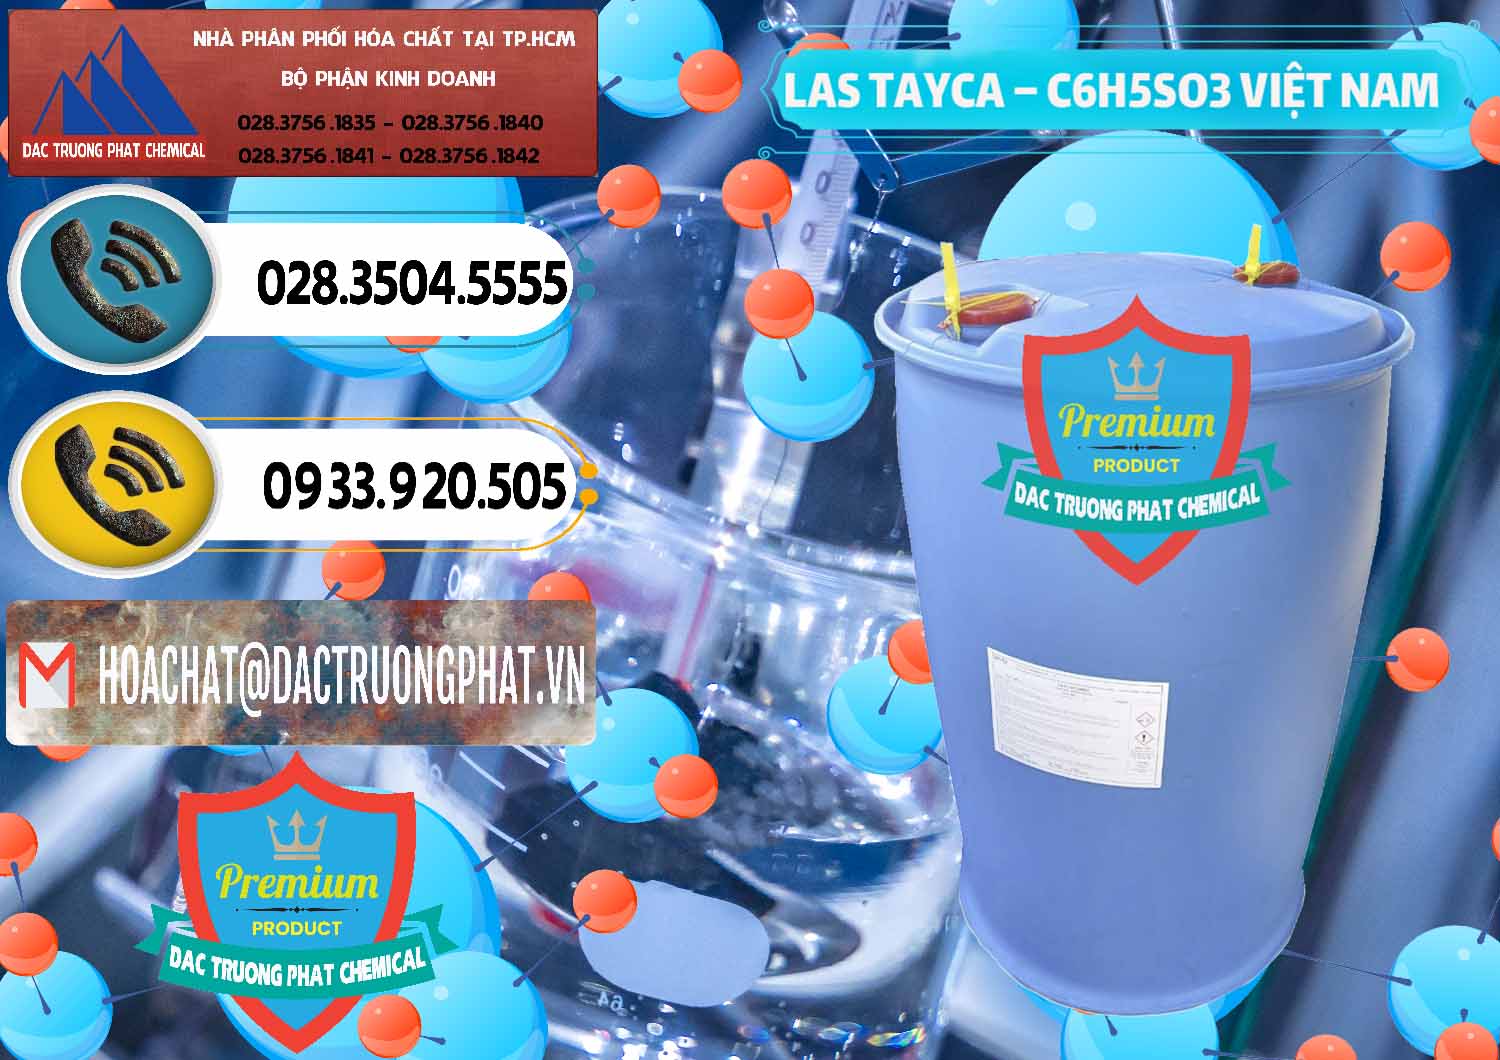 Cty chuyên phân phối - bán Chất tạo bọt Las Tayca Việt Nam - 0305 - Đơn vị chuyên phân phối và cung ứng hóa chất tại TP.HCM - hoachatdetnhuom.vn